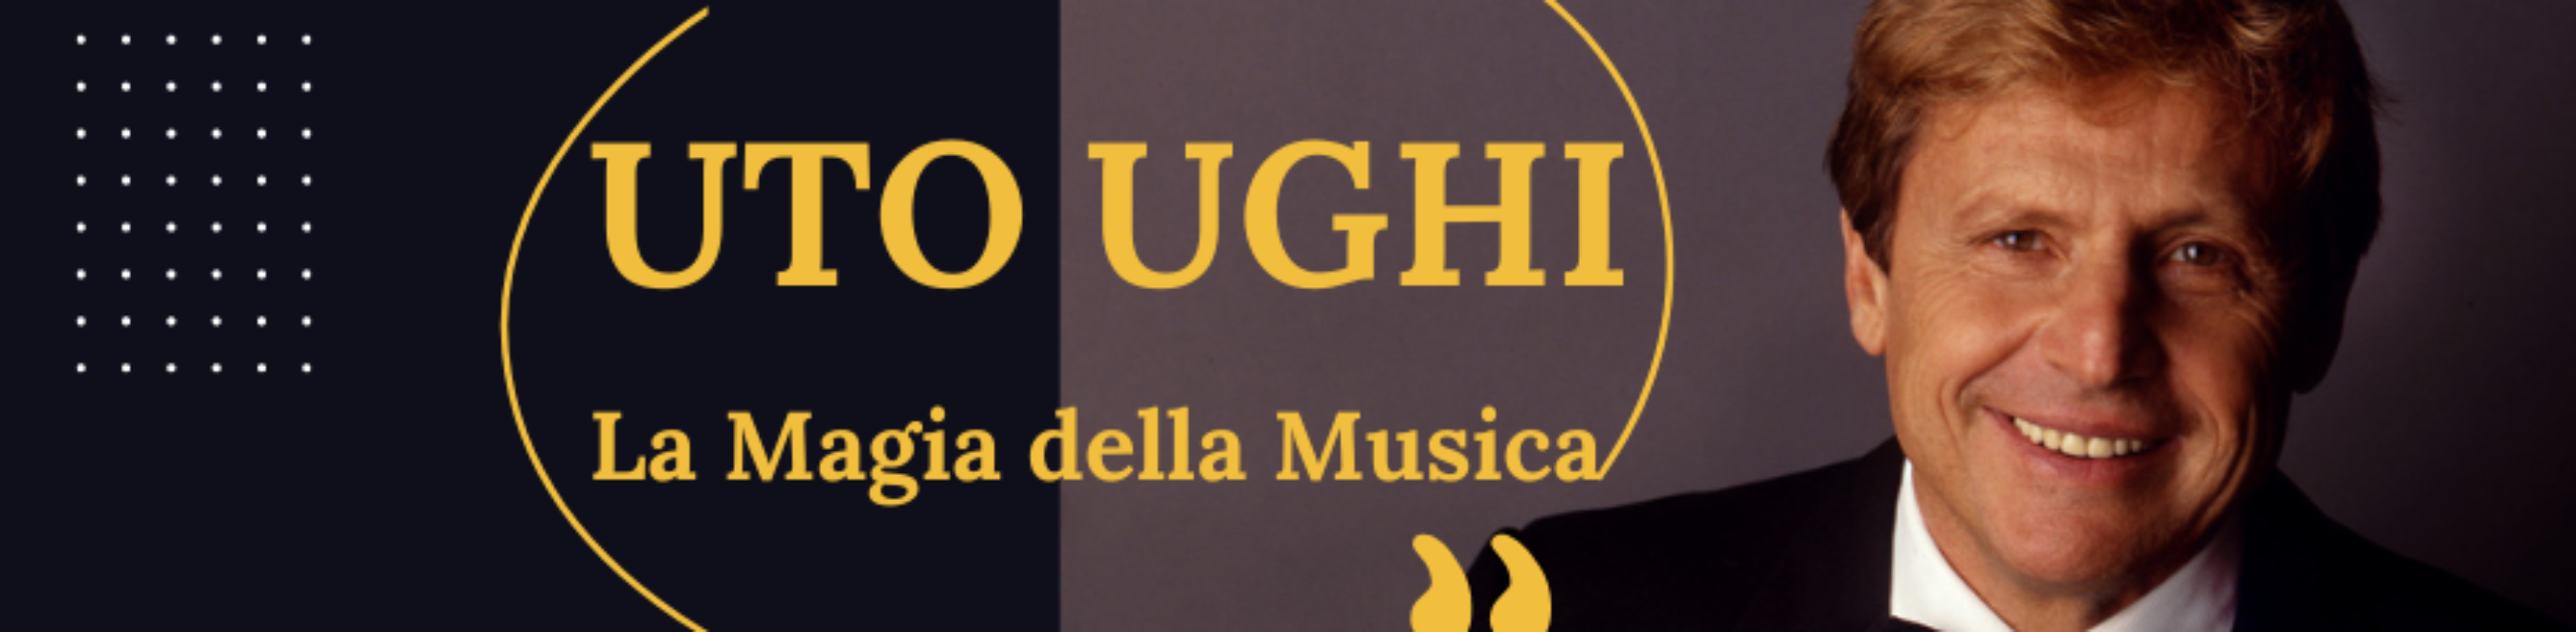 UTO UGHI "La magia della musica" con Bruno Canino